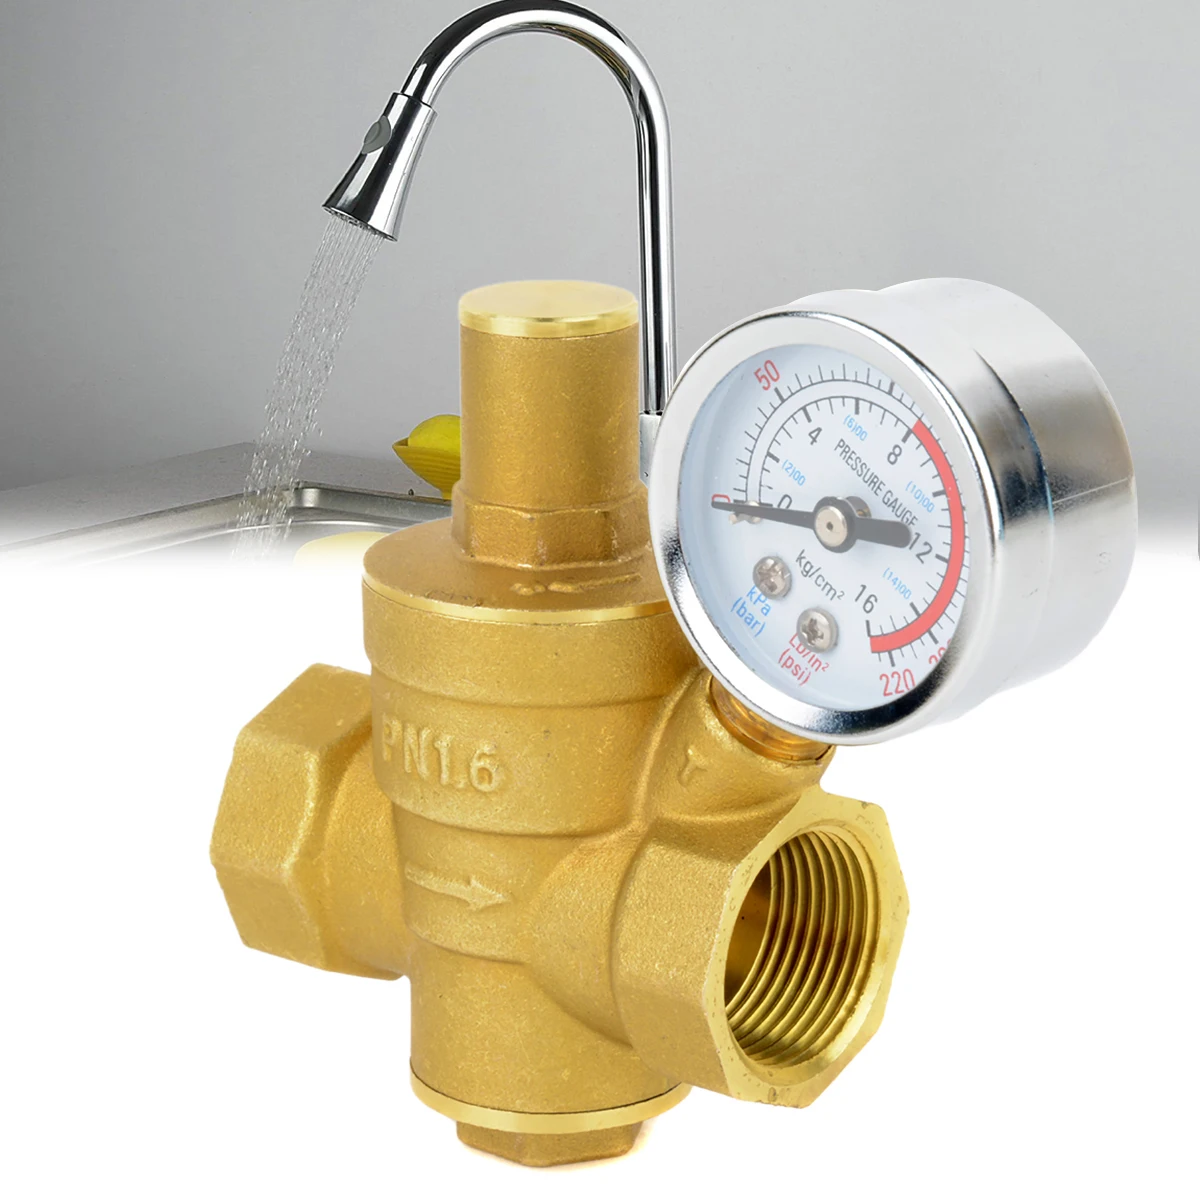 Mayitr прочный DN20 3/" Регулируемый латунный водопроводный клапан для снижения давления воды регулятор давления с манометром